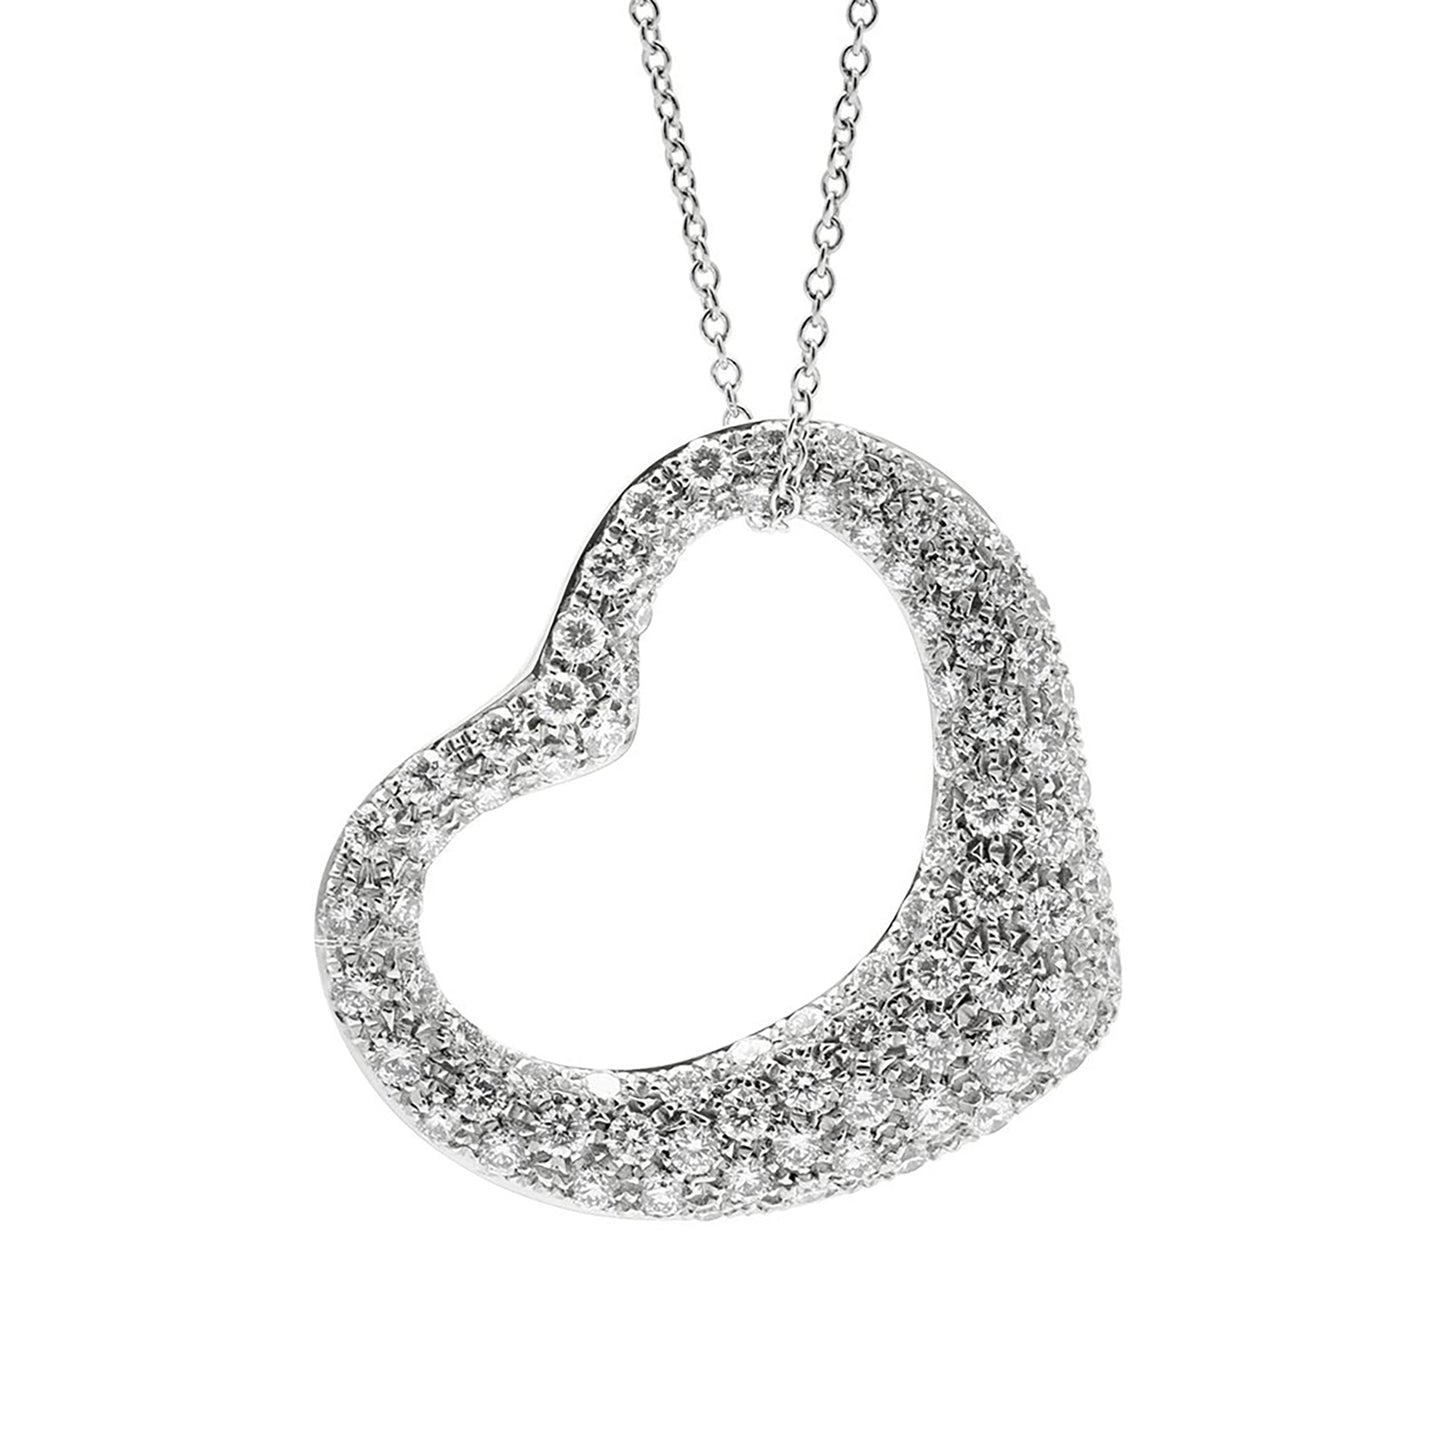 Elsa Peretti® Open Heart pendant in 18k gold with diamonds.| Tiffany & Co.